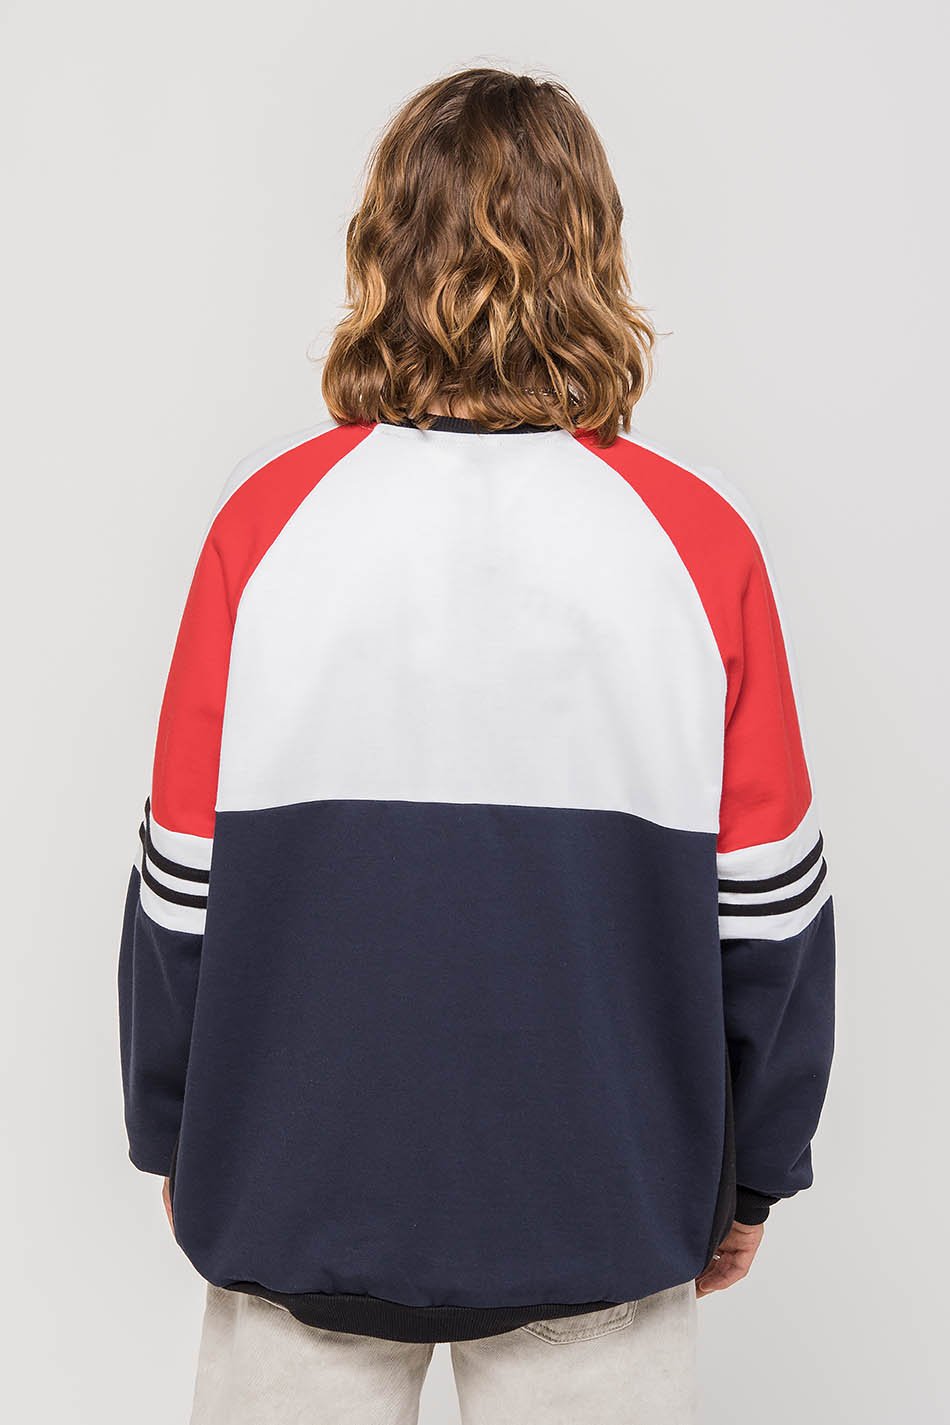 California Navy / Red Sweatshirt